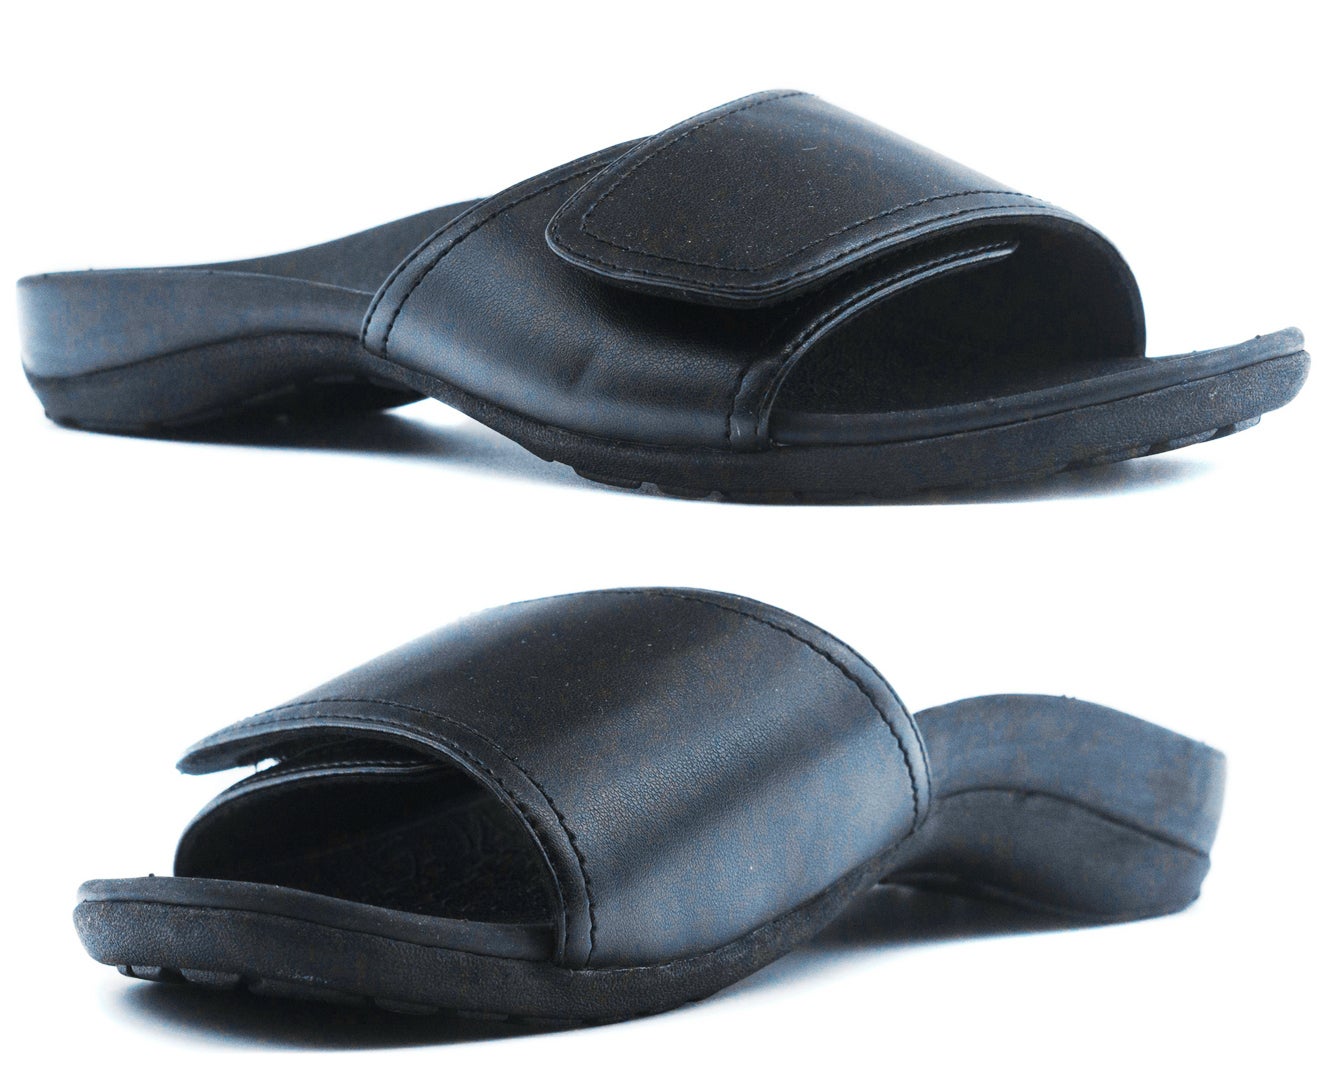 Axign Orthotic Slides Slip On Thongs Slippers Flip Flops - Black